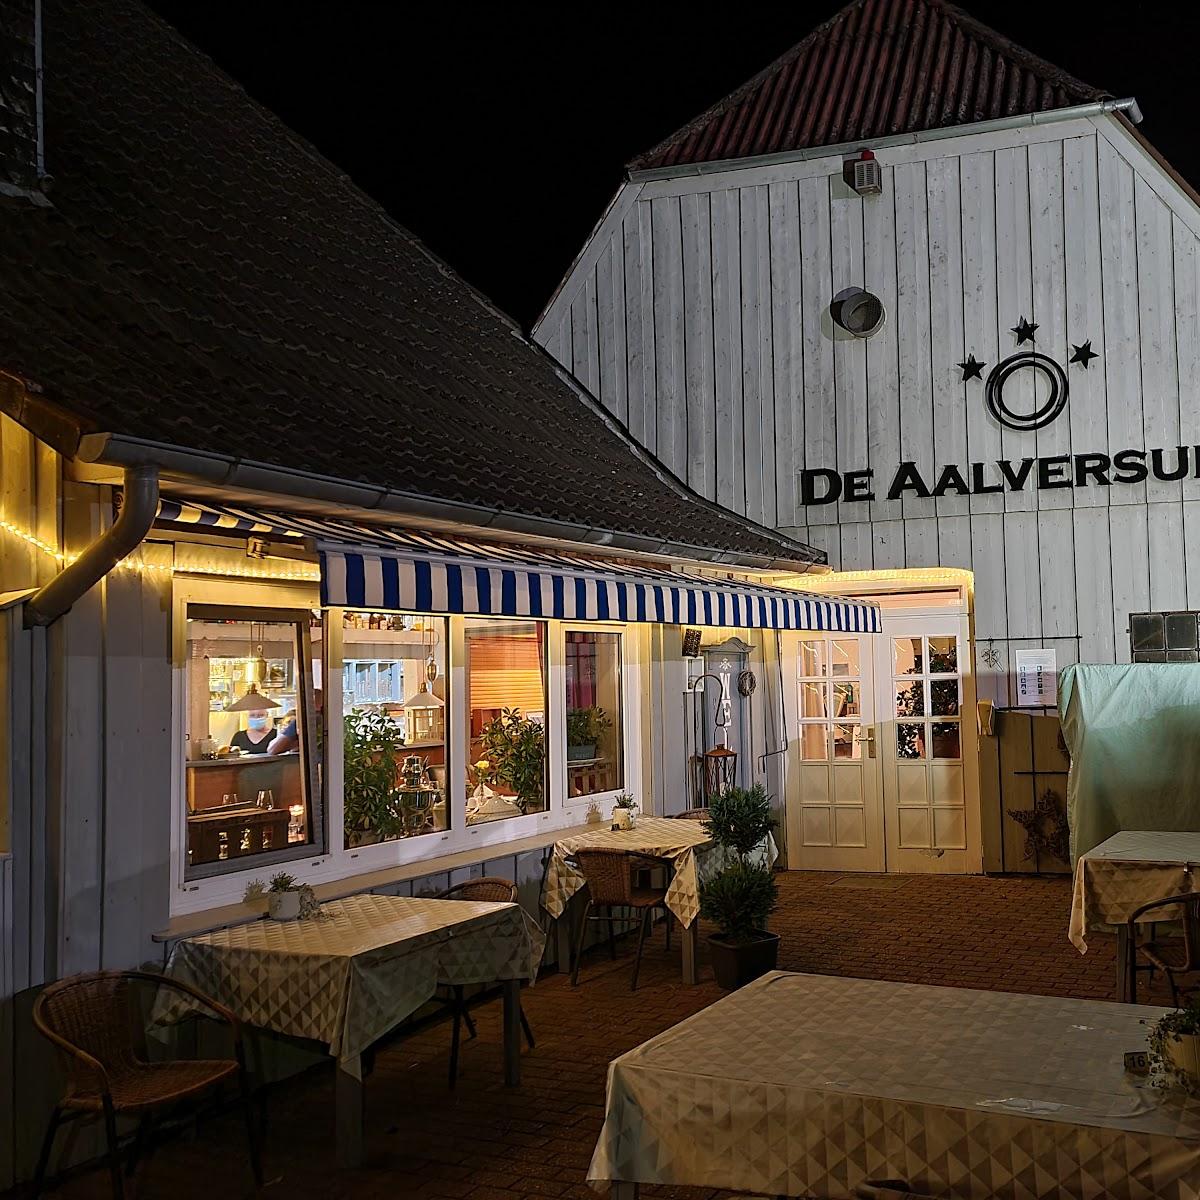 Restaurant "De Aalversuper GmbH" in Fockbek